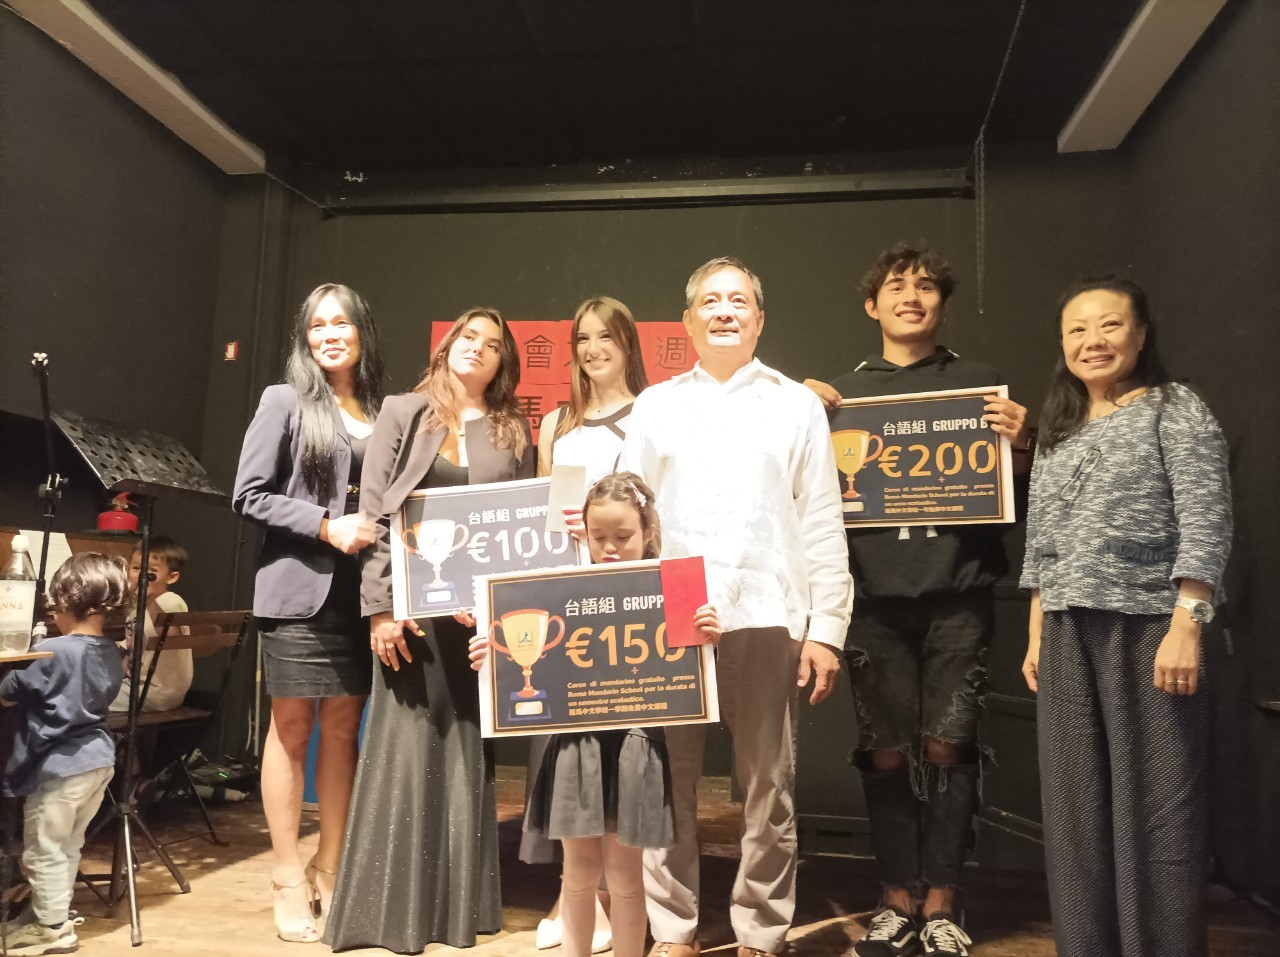 評審李新穎代表、Lucia Lu聲樂家、湯美快華語老師與臺語組前三名得獎者合影